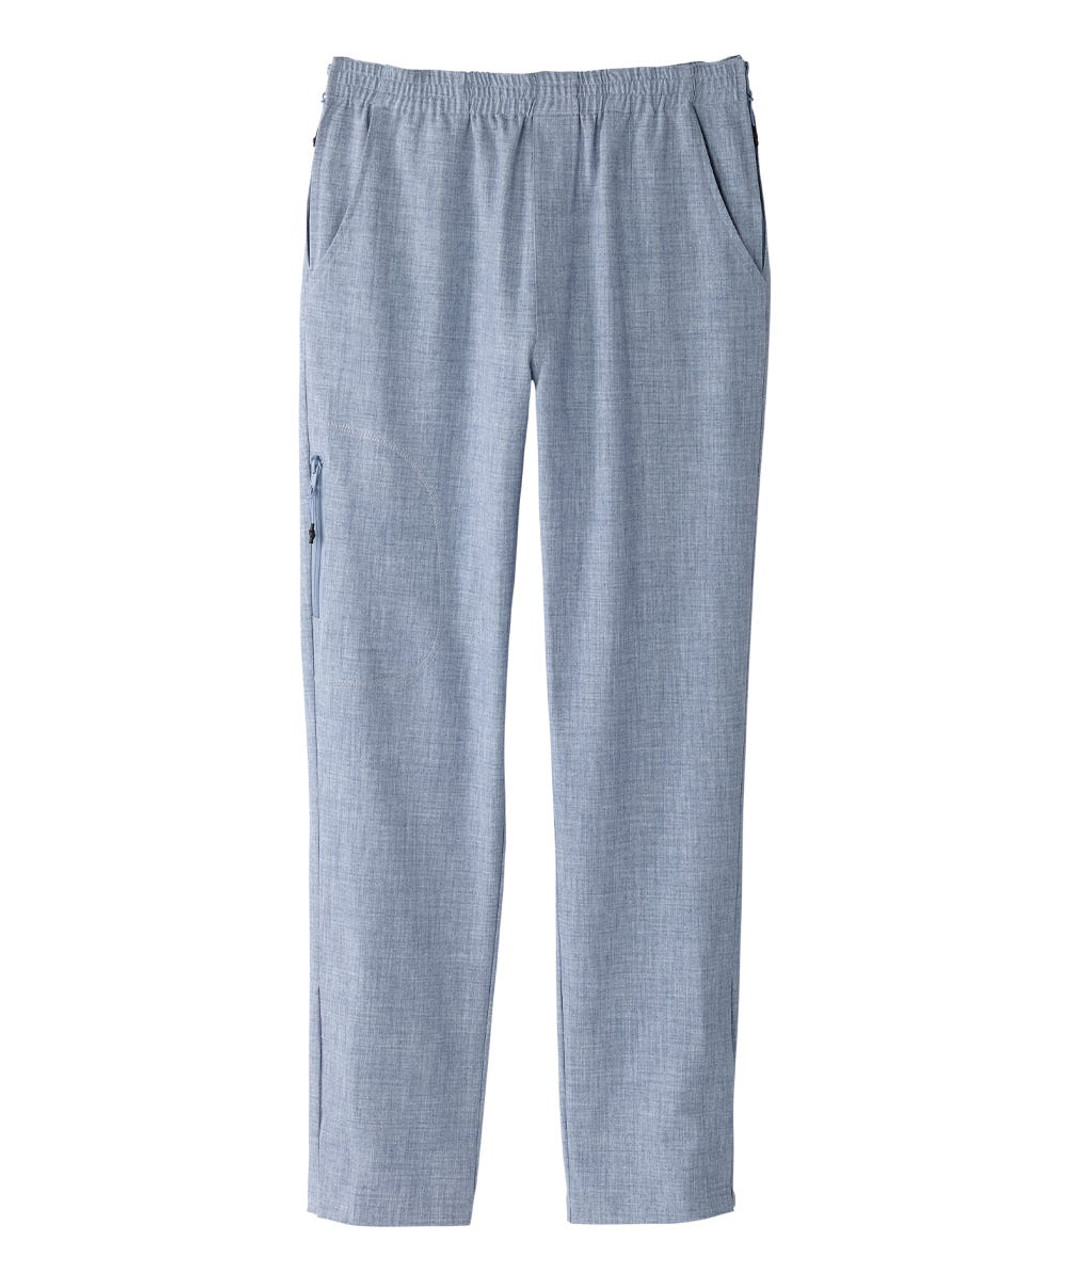 Silverts SV040 Senior Women's Side Zip Adaptive Linen Pant Breezy Blue, Size=L, SV040-SV2003-L